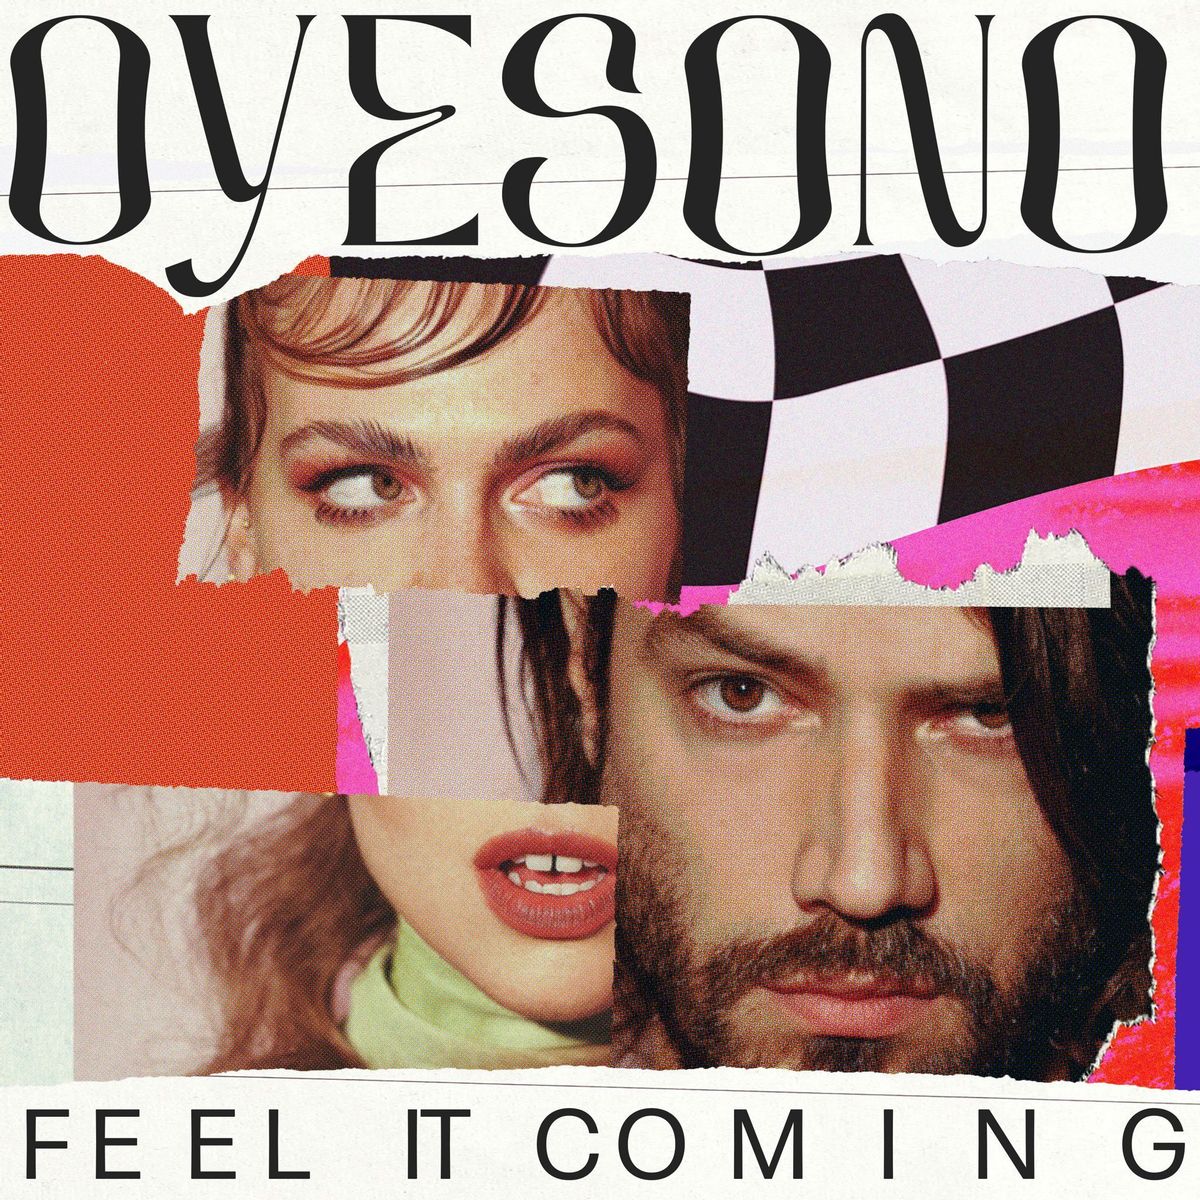 Oyesono - Feel It Coming